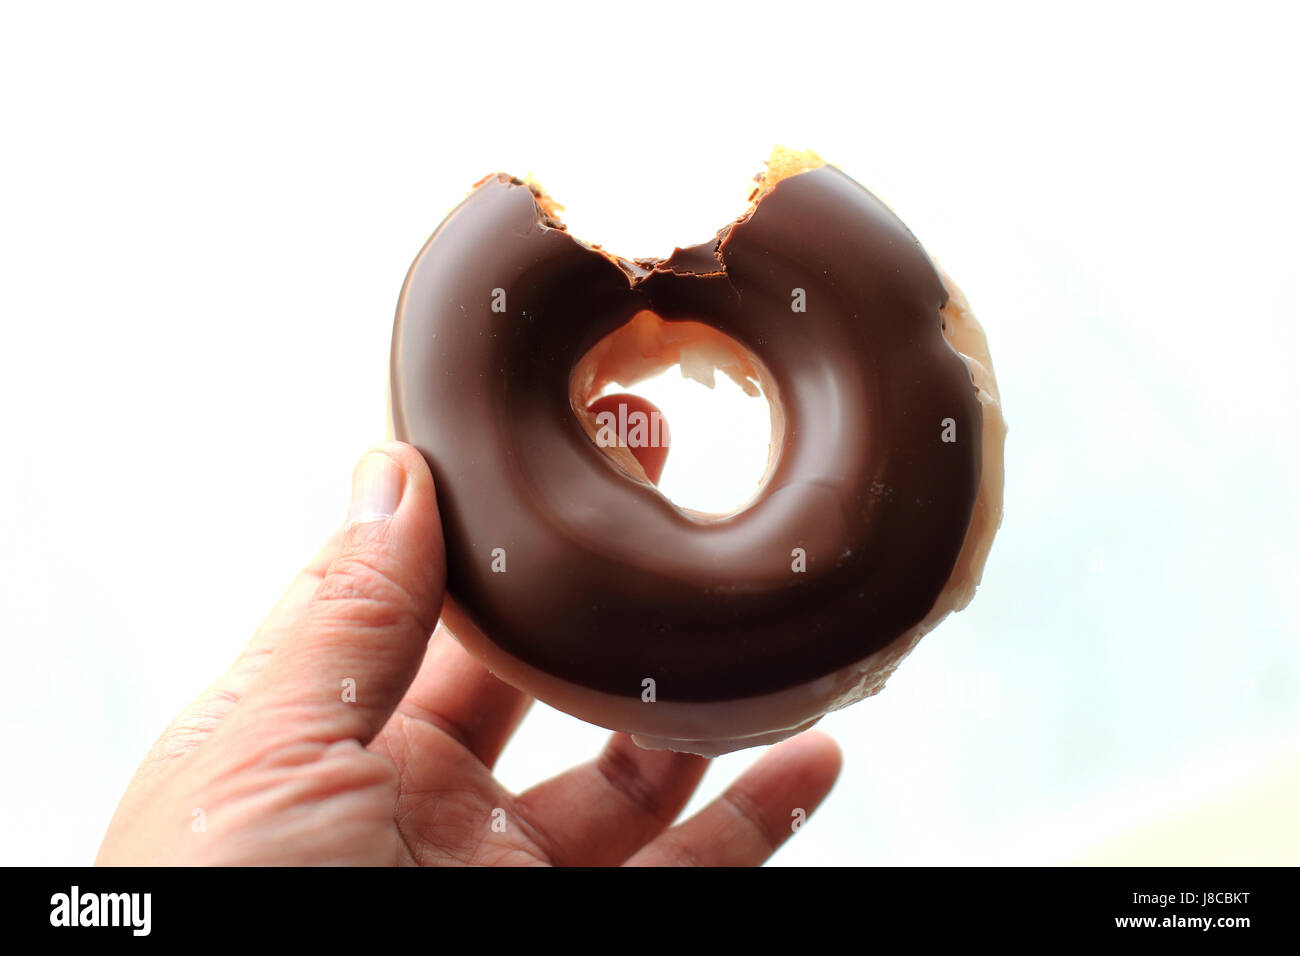 Donut enrobées de chocolat avec bouchée prise hors isolés contre fond blanc Banque D'Images